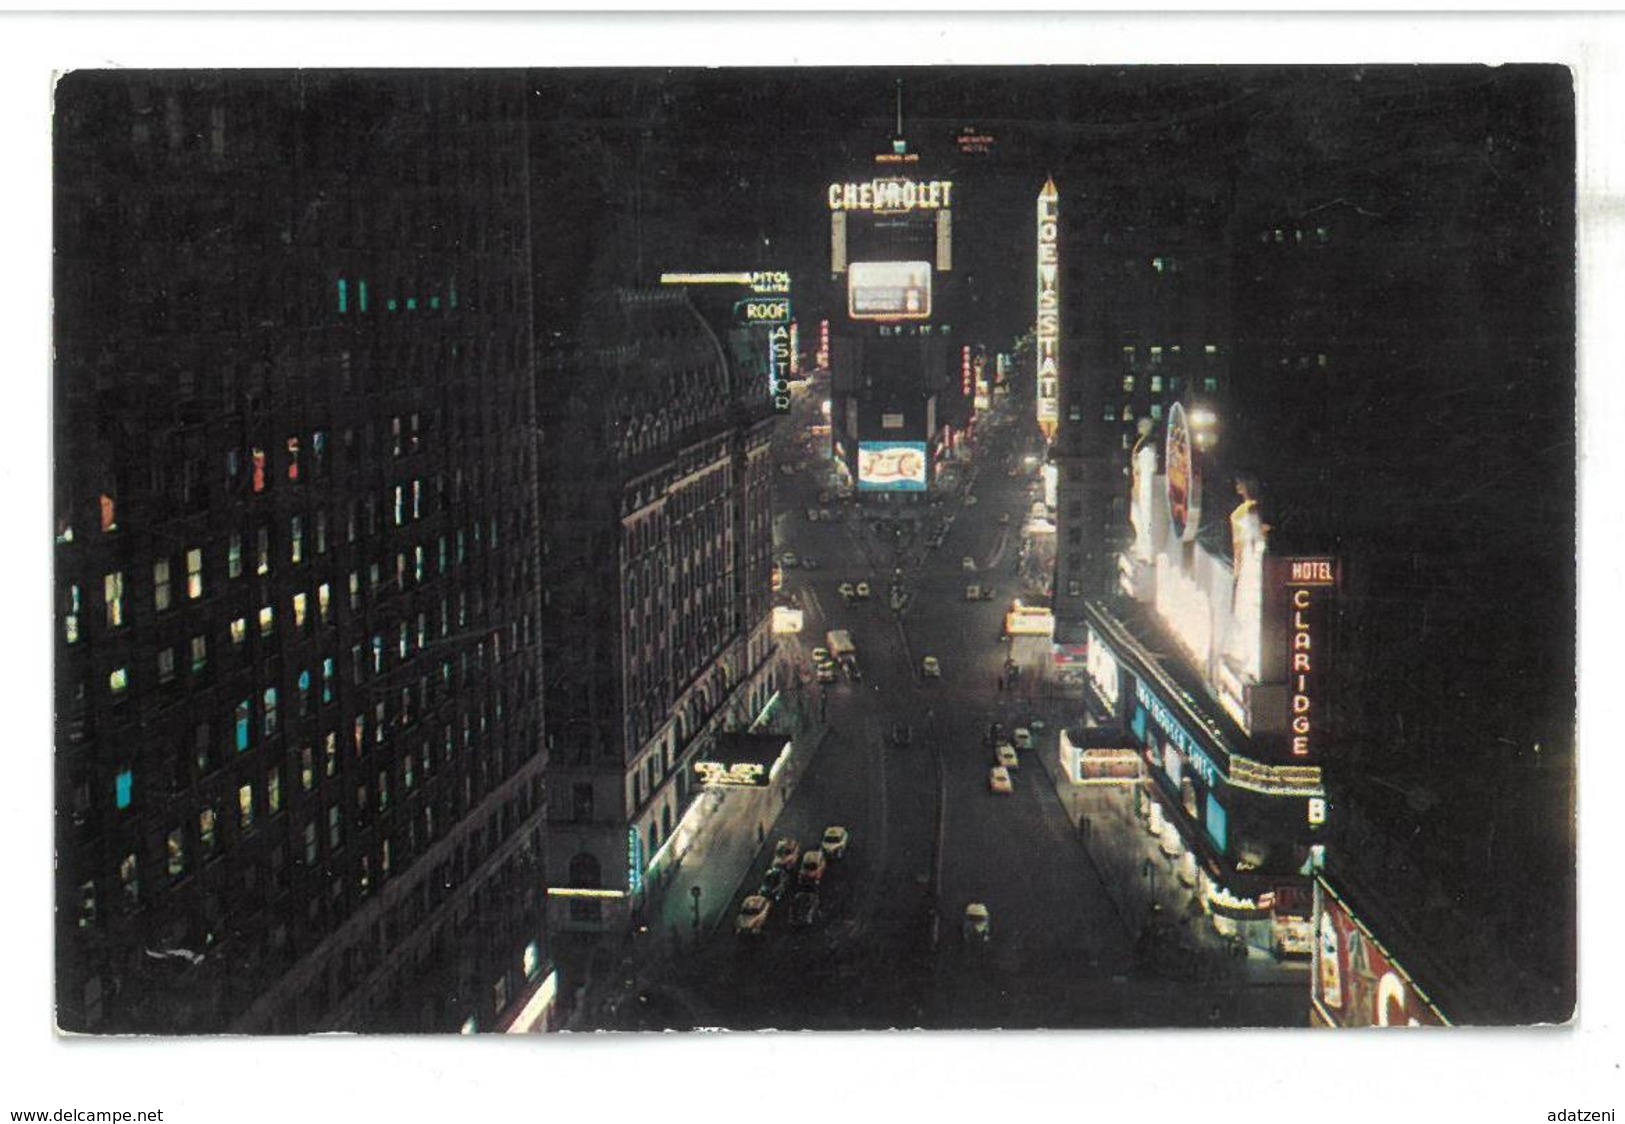 U.S.A. Stati Uniti D’America Times Square At Night New York City Non Viaggiata Condizioni Come Da Scansione - Time Square